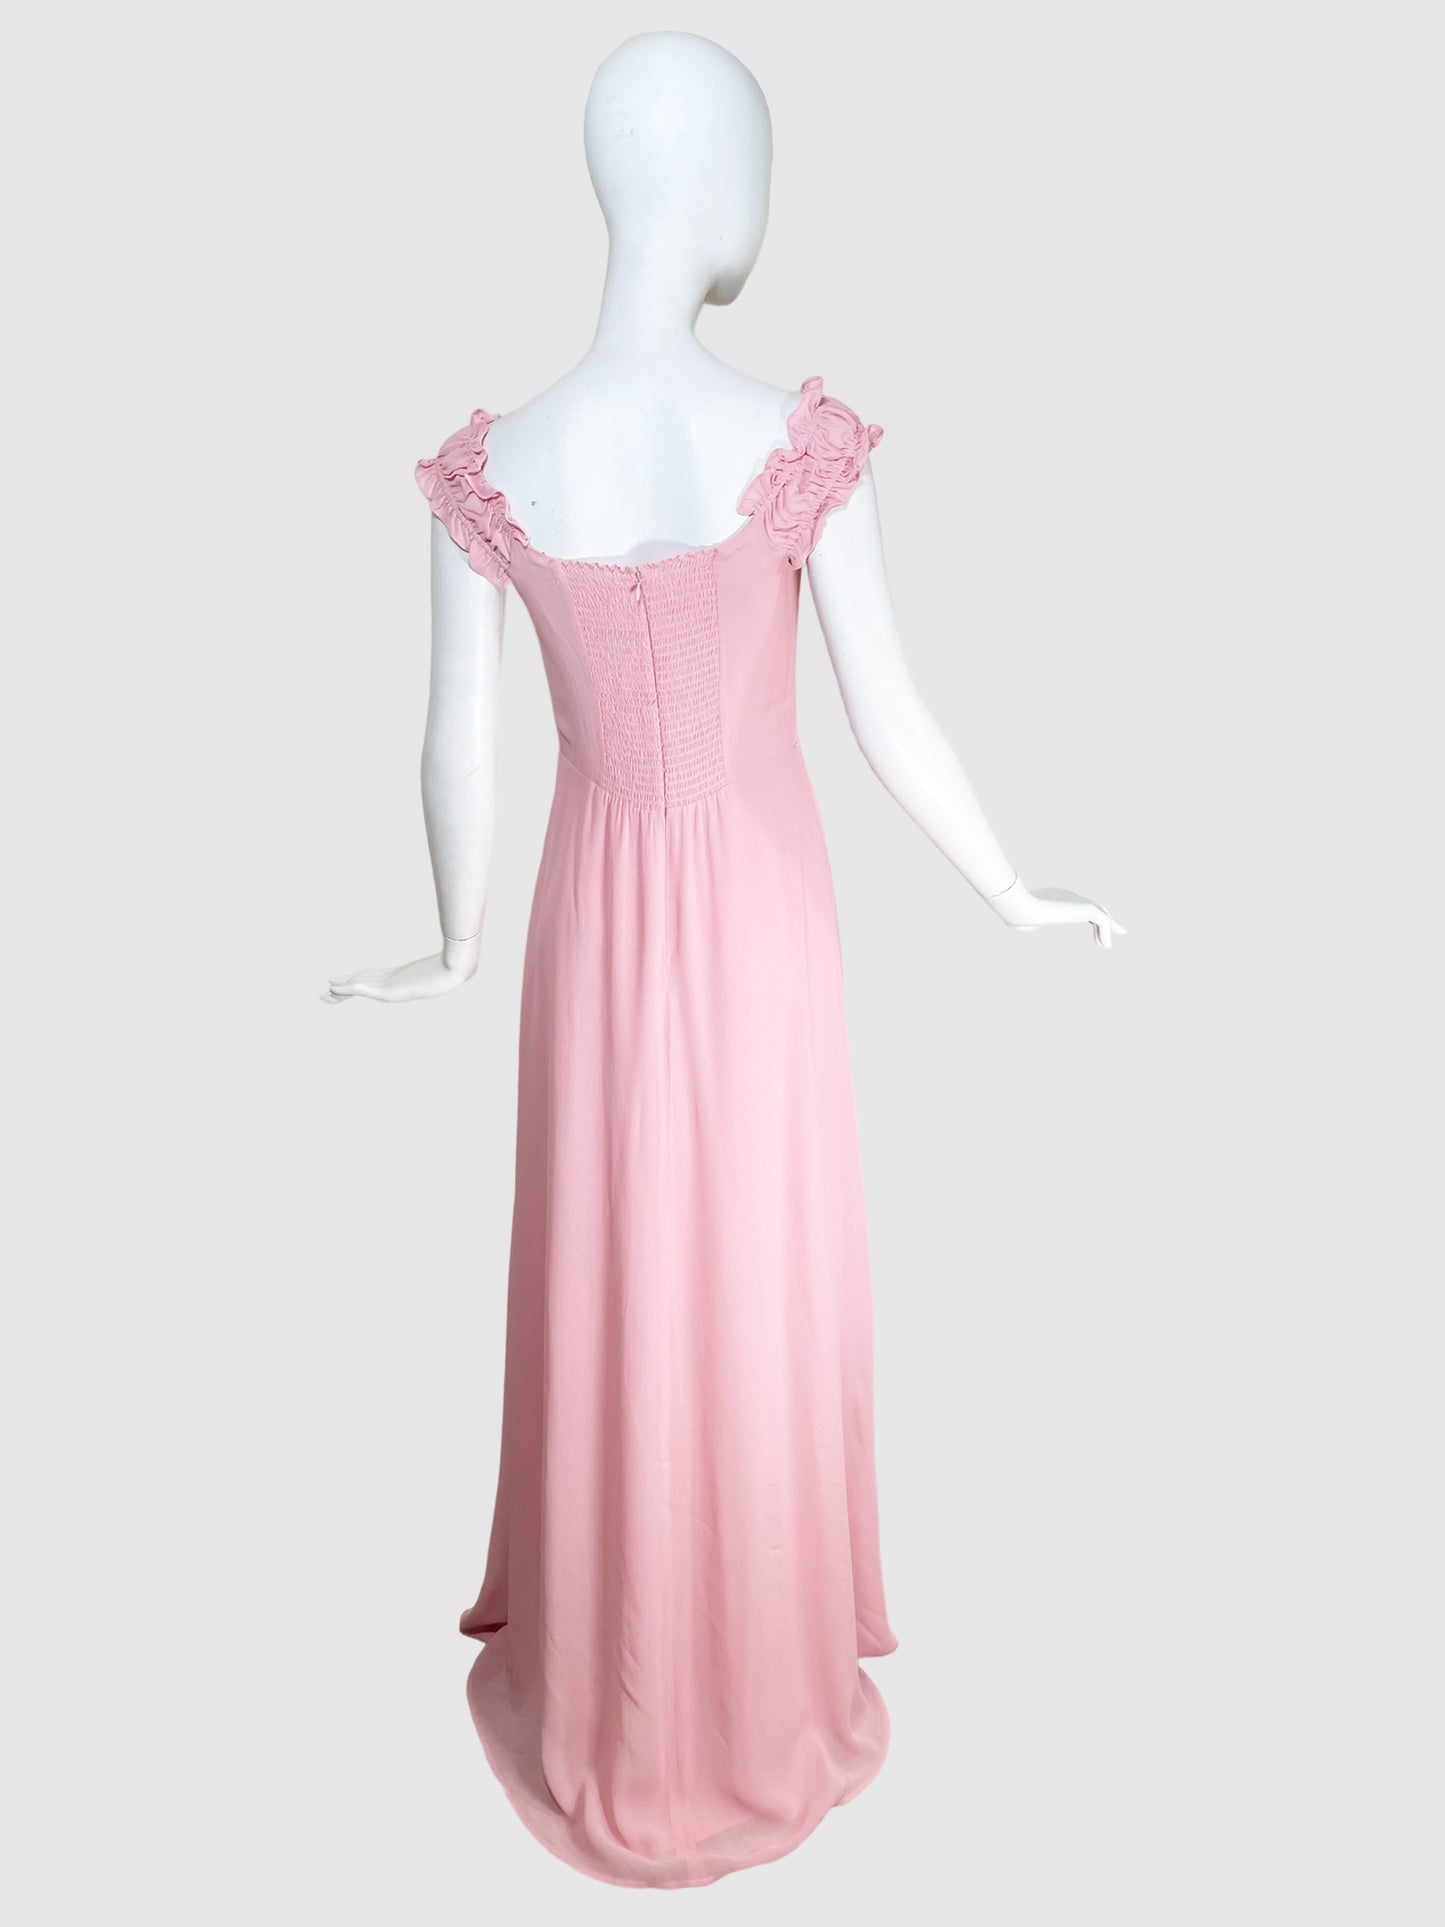 Reformation Cold-Shoulder Gown Dress - Size 6